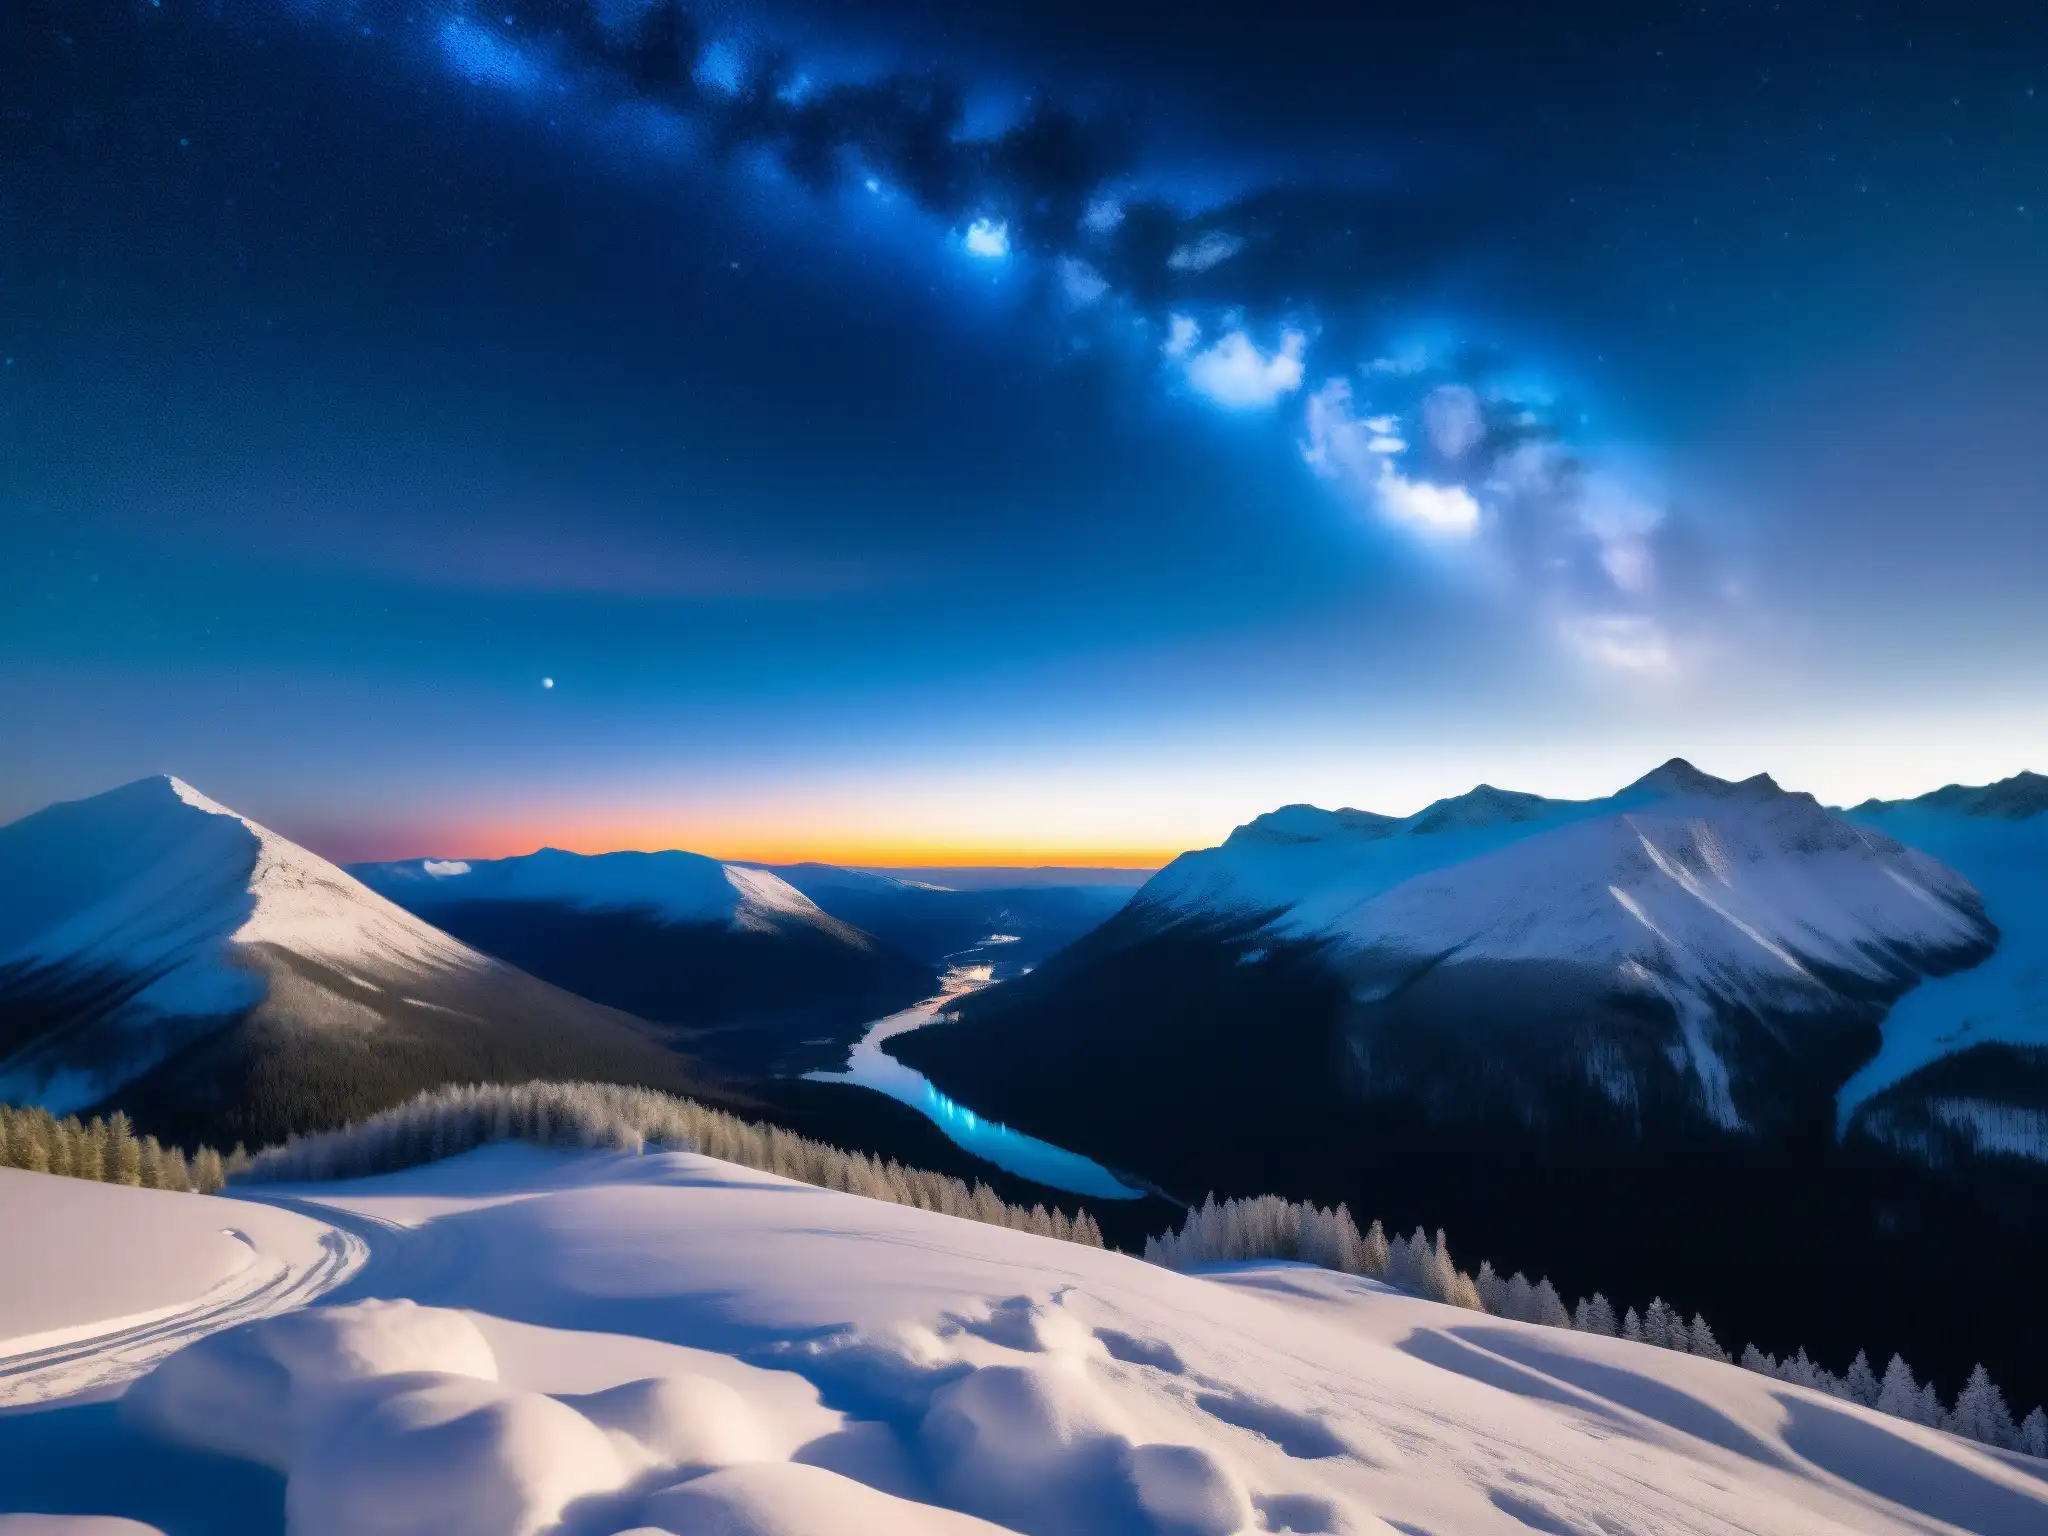 Misteriosa foto del fenómeno luces Hessdalen Canadá, capturando un cielo nocturno deslumbrante sobre el valle, con luces enigmáticas iluminando la noche estrellada